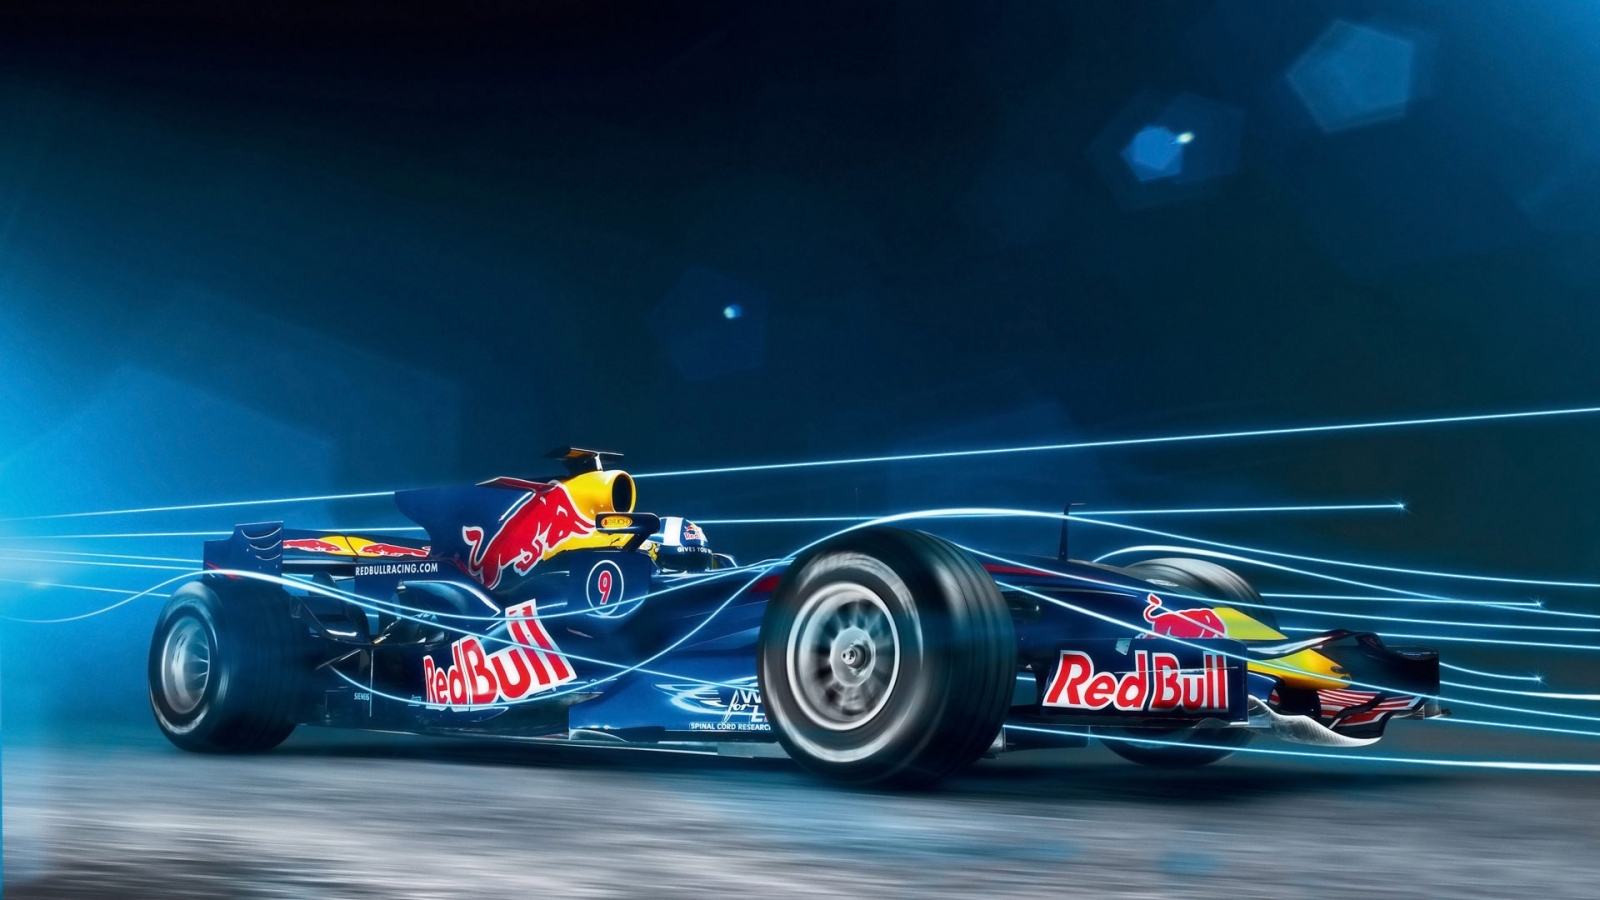 Red Bull Formula 1 for 1600 x 900 HDTV resolution